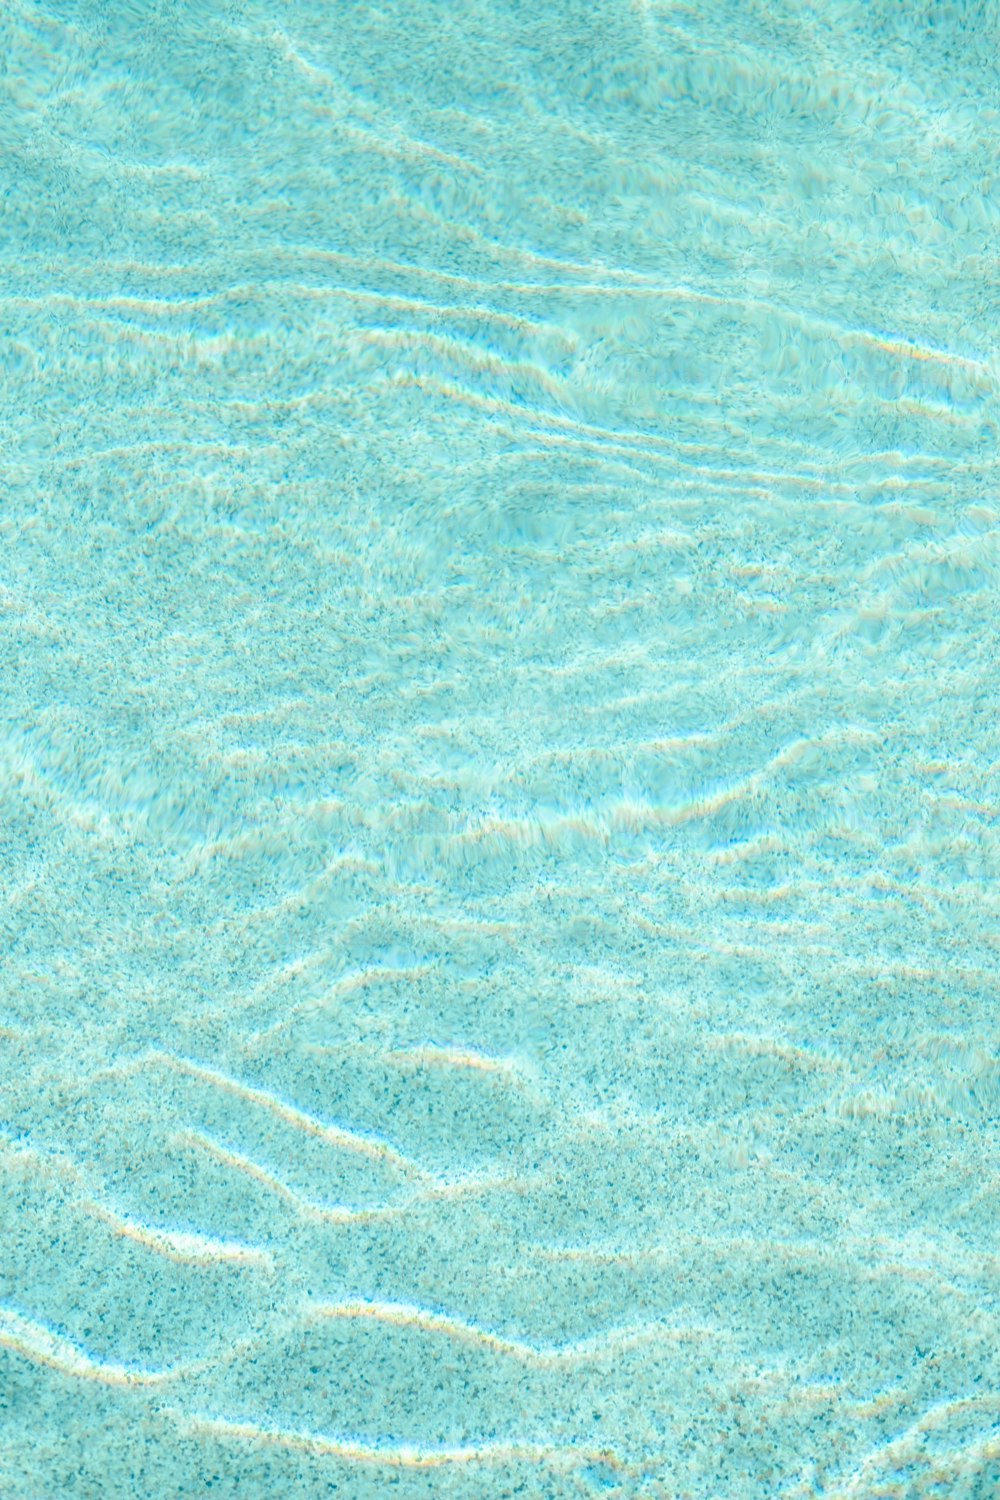 uma piscina azul com água clara e ondulações